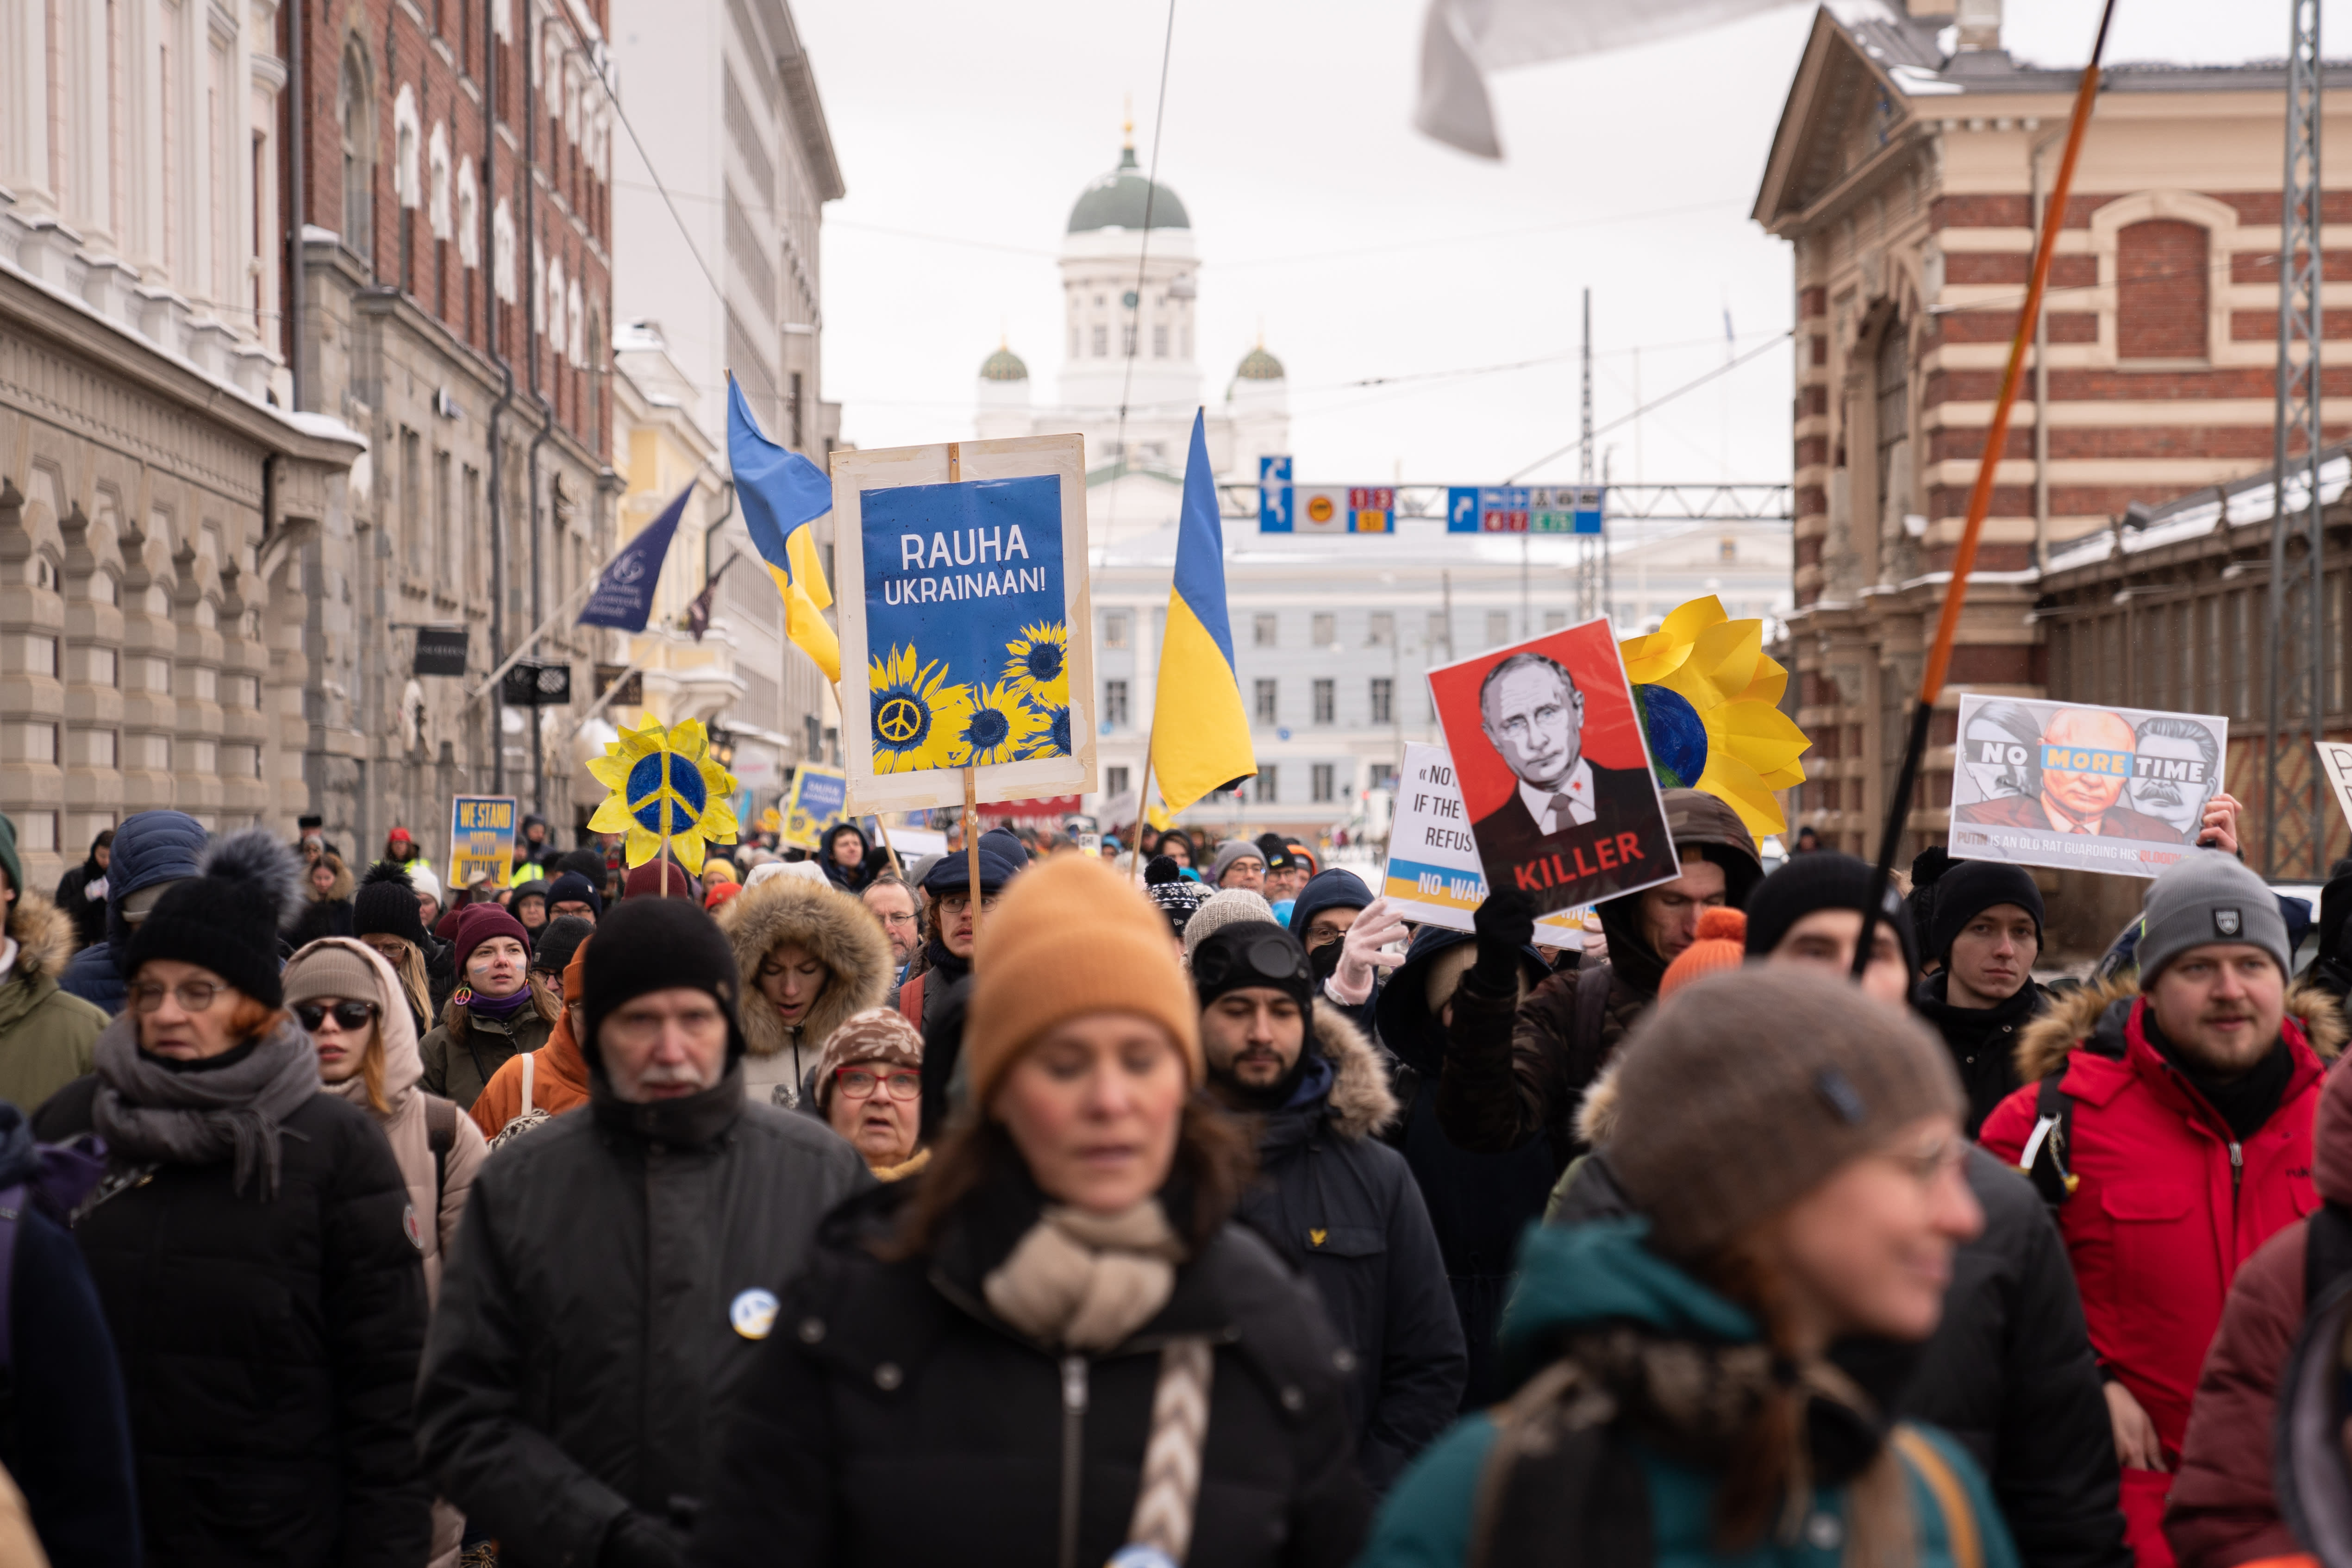 1000 march in Helsinki to demand peace in Ukraine